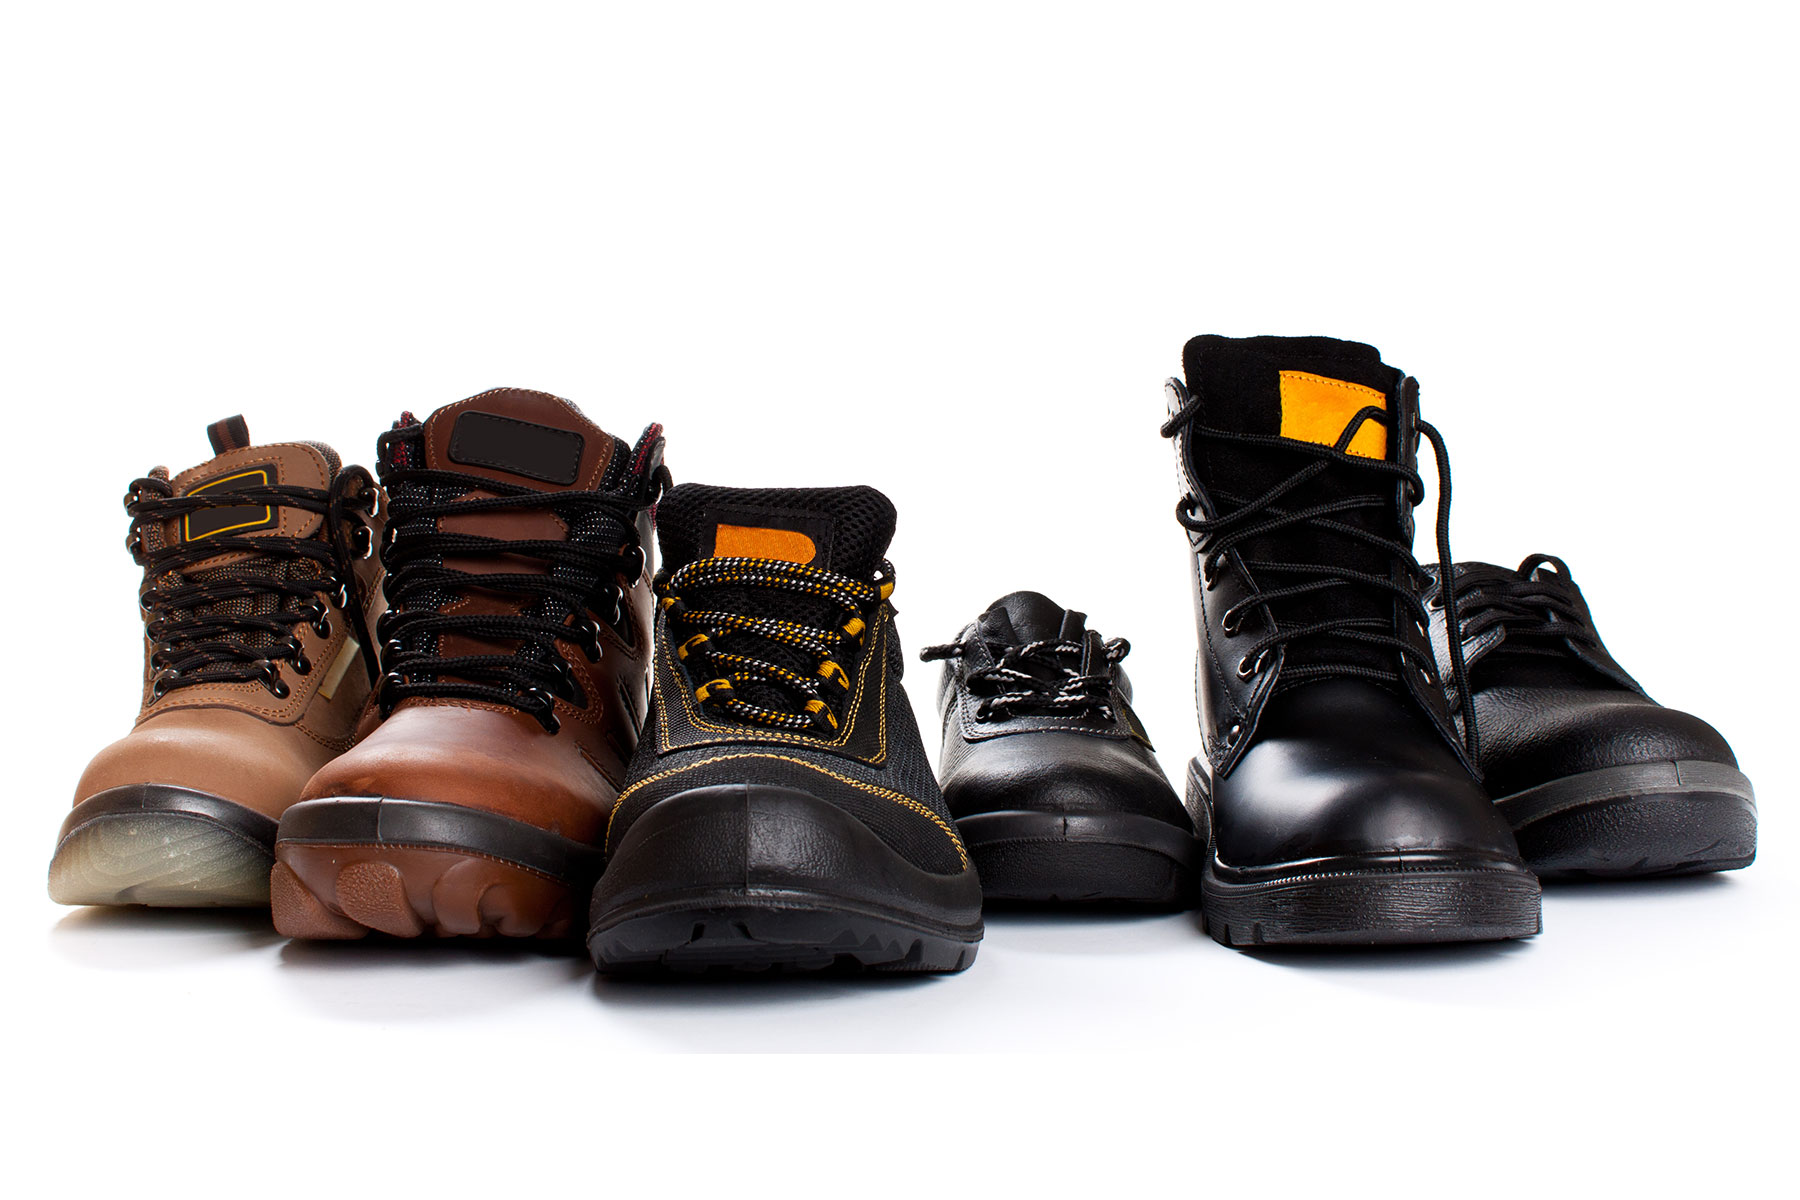 Pracovní, ochranná a bezpečnostní obuv. Funkce a požadavky na úroveň ochrany